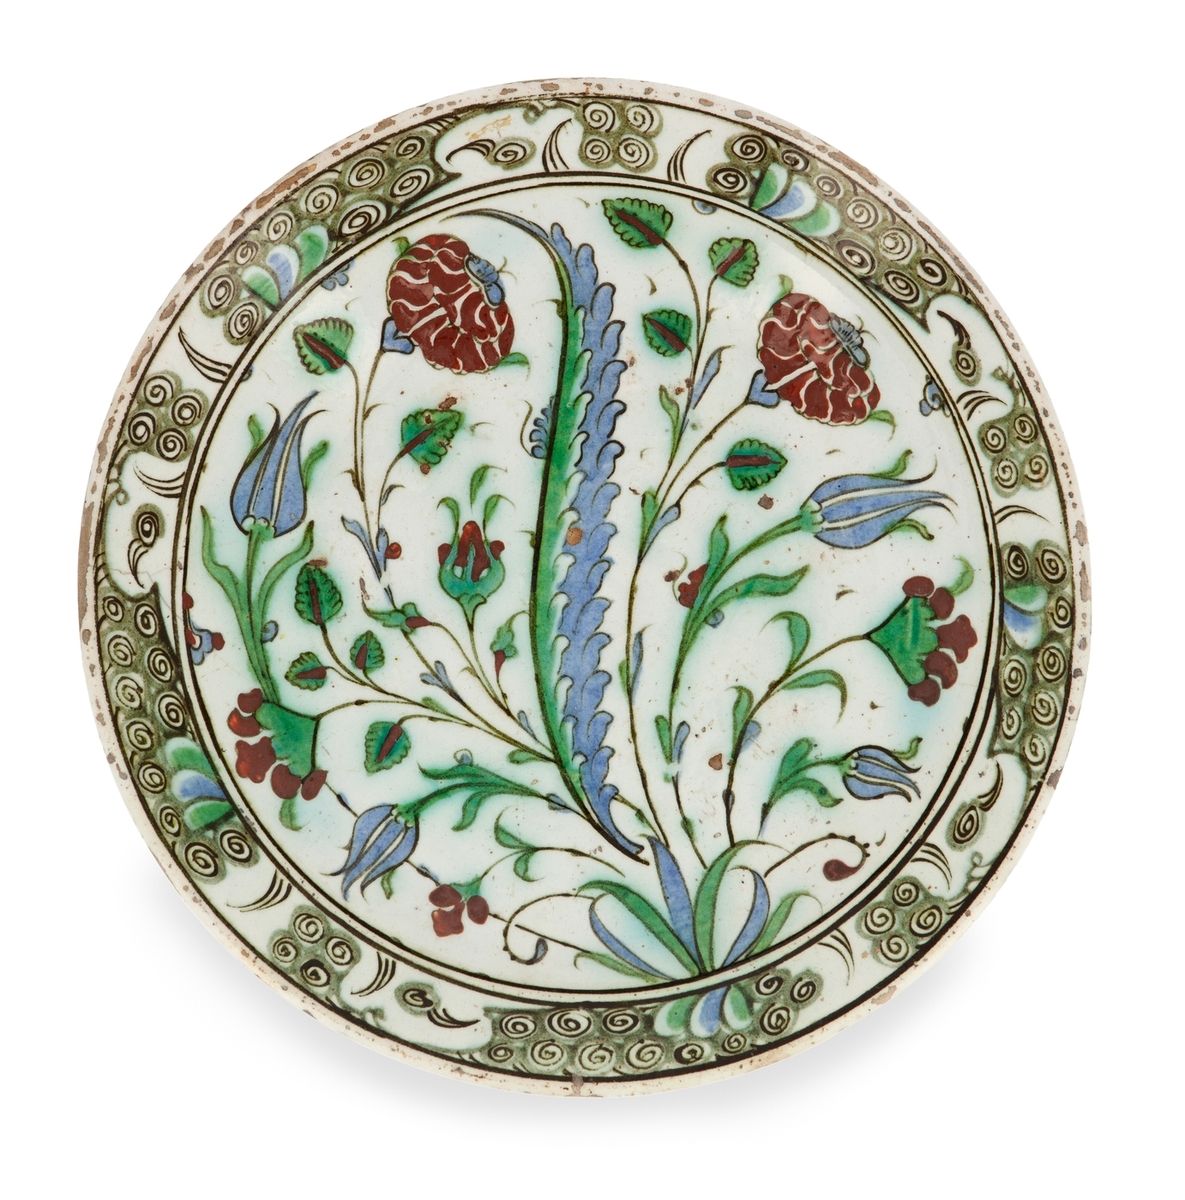 Null 奥斯曼帝国带花的塔巴克
伊兹尼克，土耳其，17世纪
一个白底多色珐琅彩装饰的硅质陶瓷盘。装饰包括郁金香、康乃馨和蛋花，围绕着一片萨兹叶。边缘装饰有发泡&hellip;